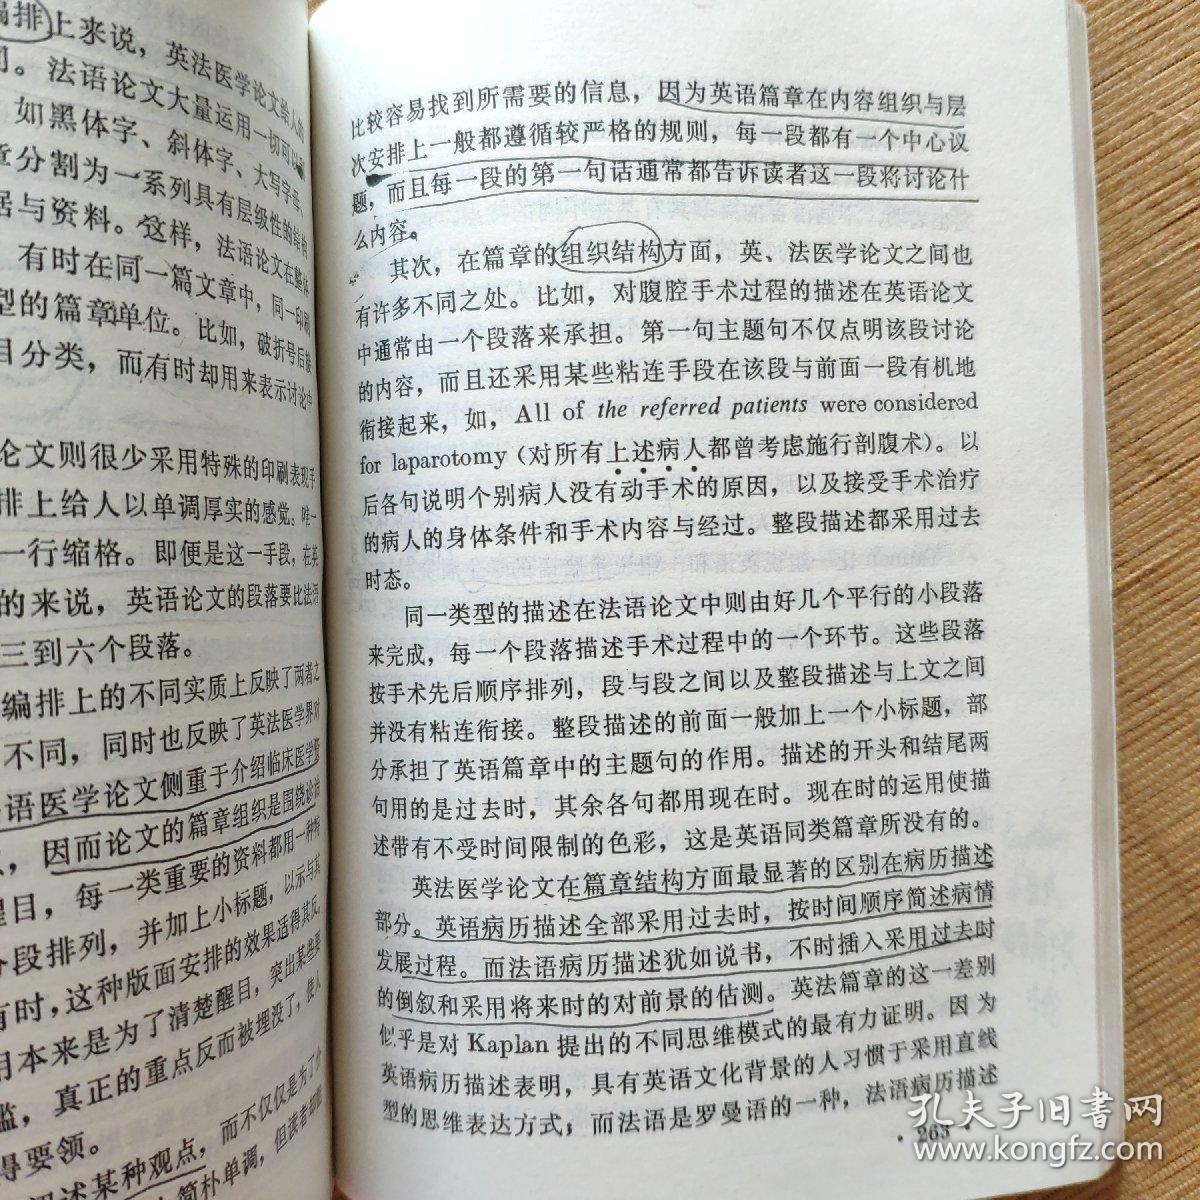 对比语言学概论/许余龙编著，上海外语教育出版社1992年第一版2000年第四次印刷